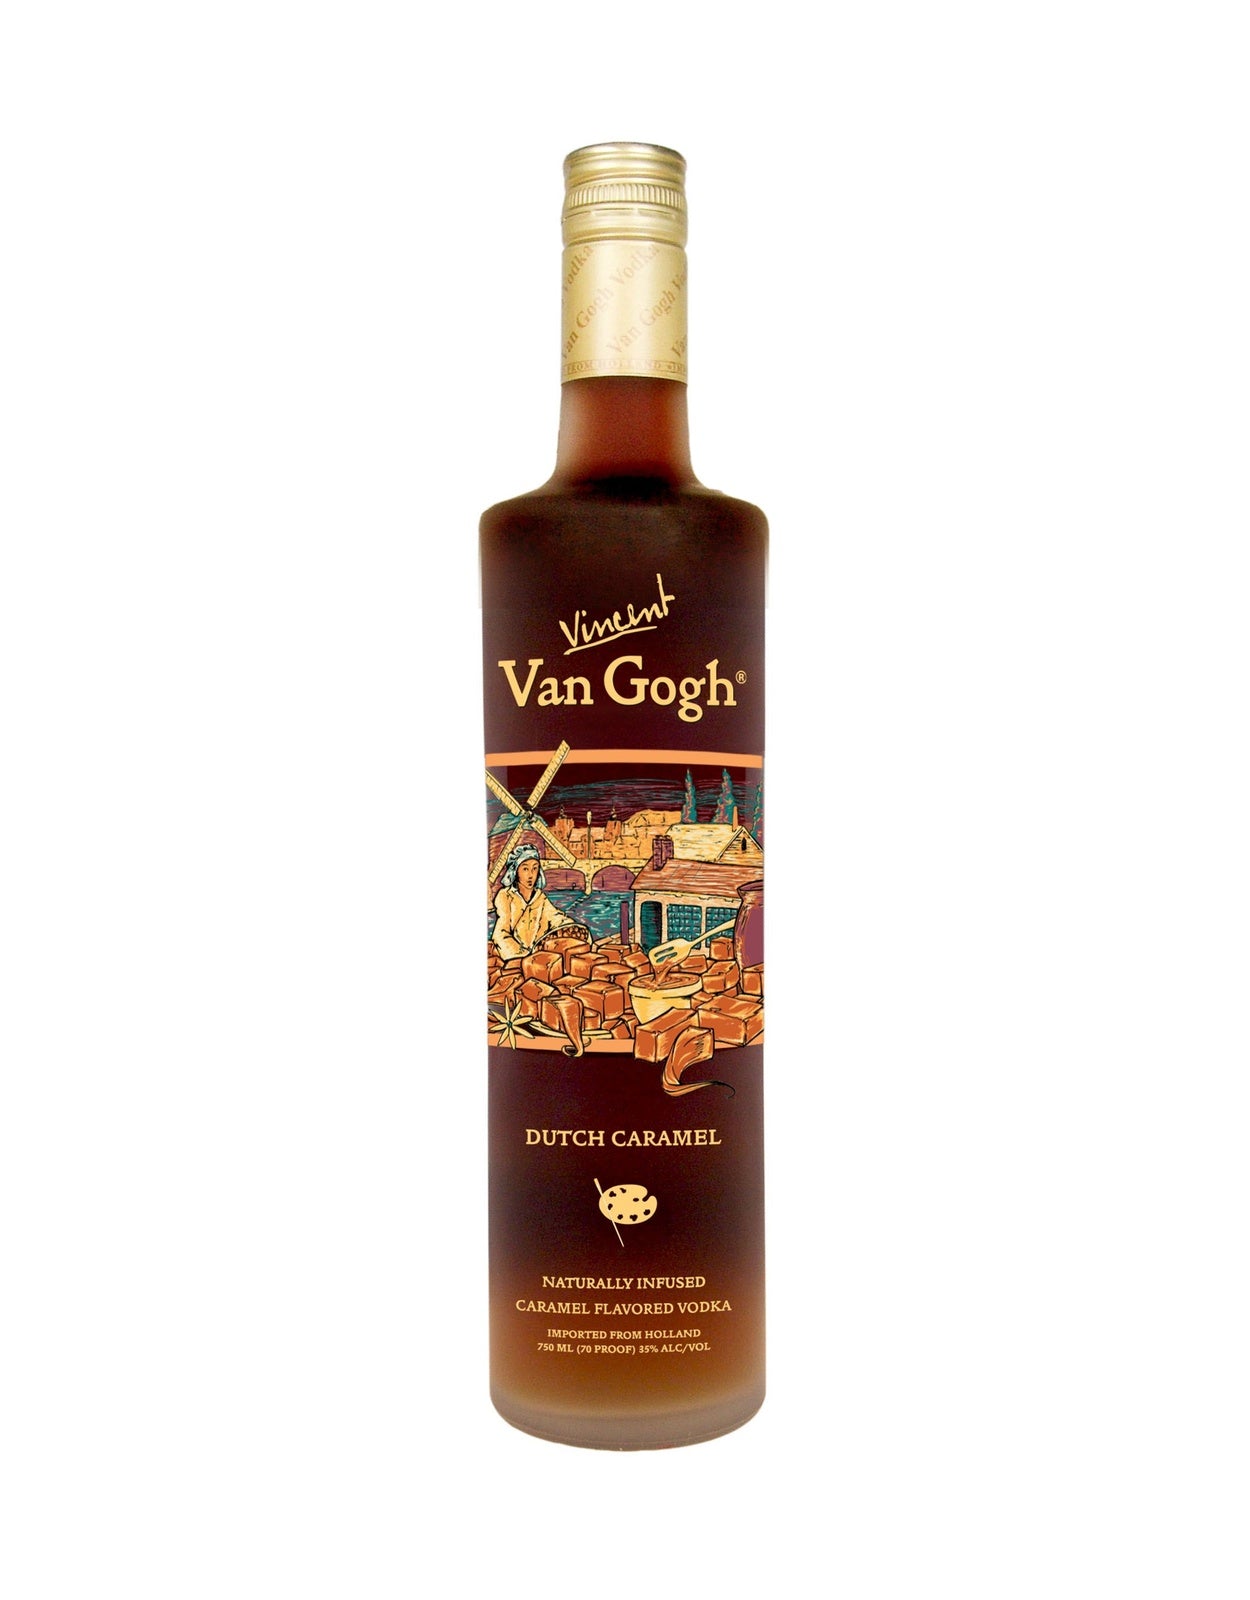 Van Gogh Dutch Caramel Vodka